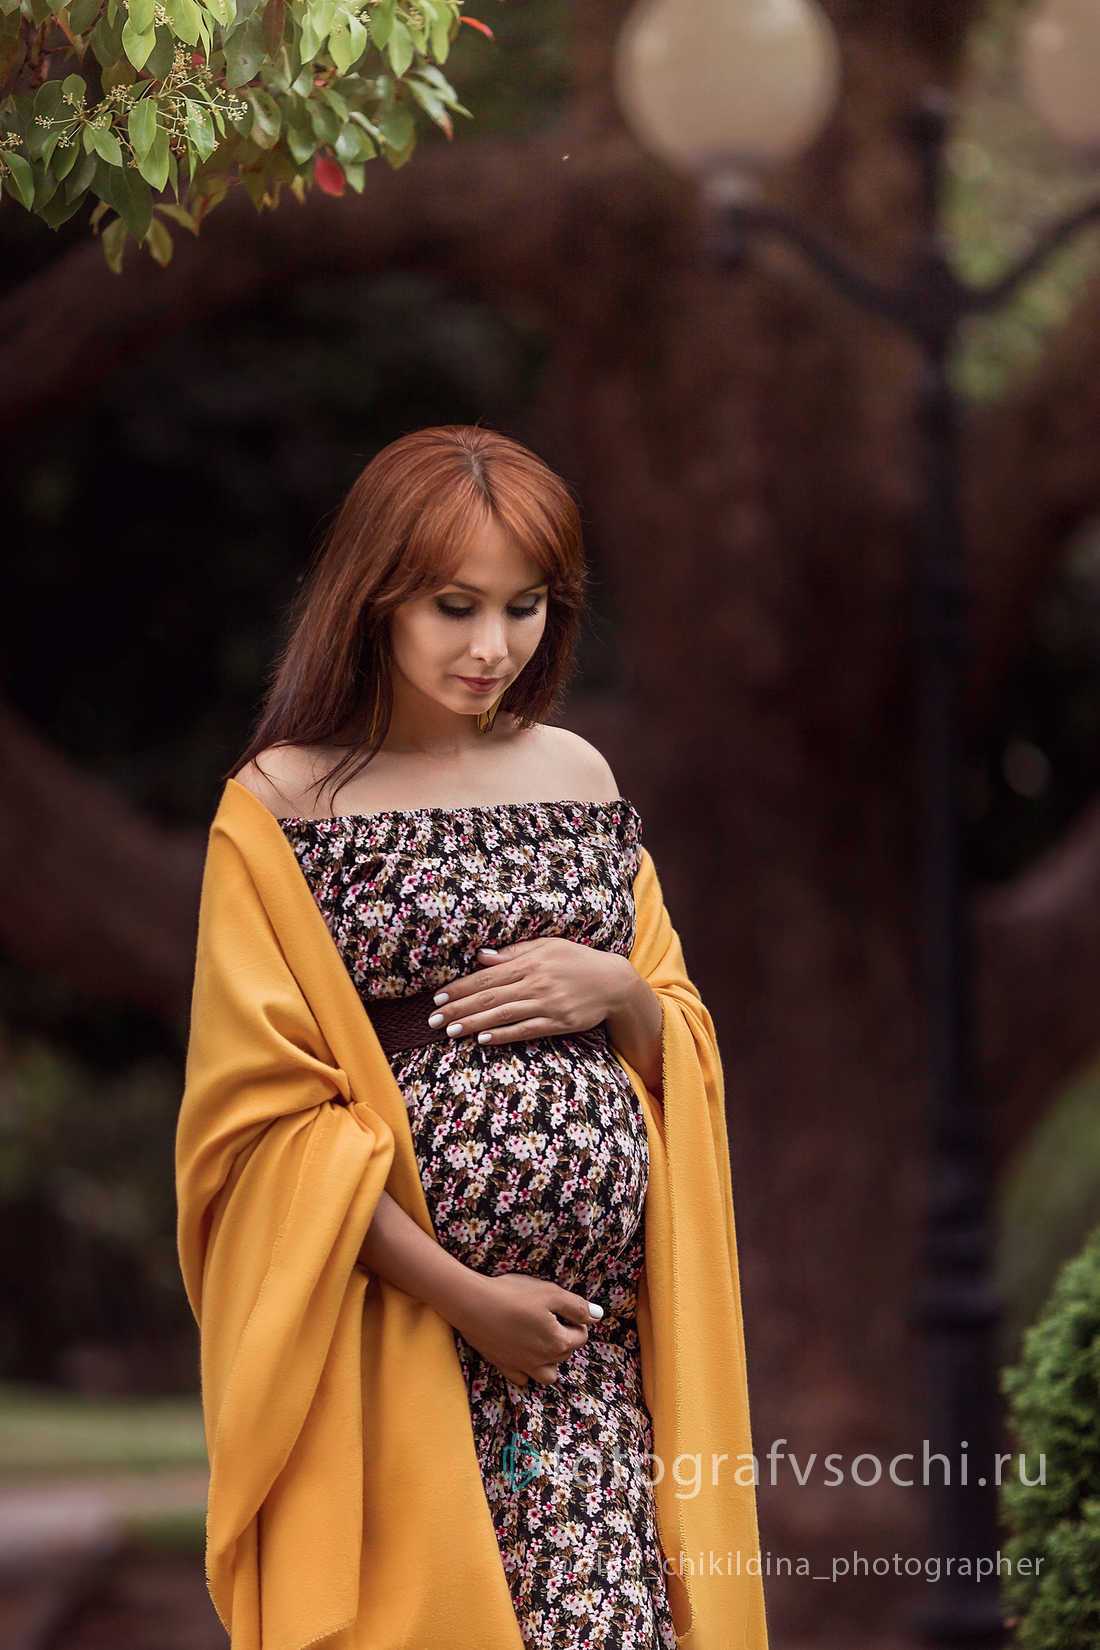 Беременная женщина гладит живот и смотрит на него